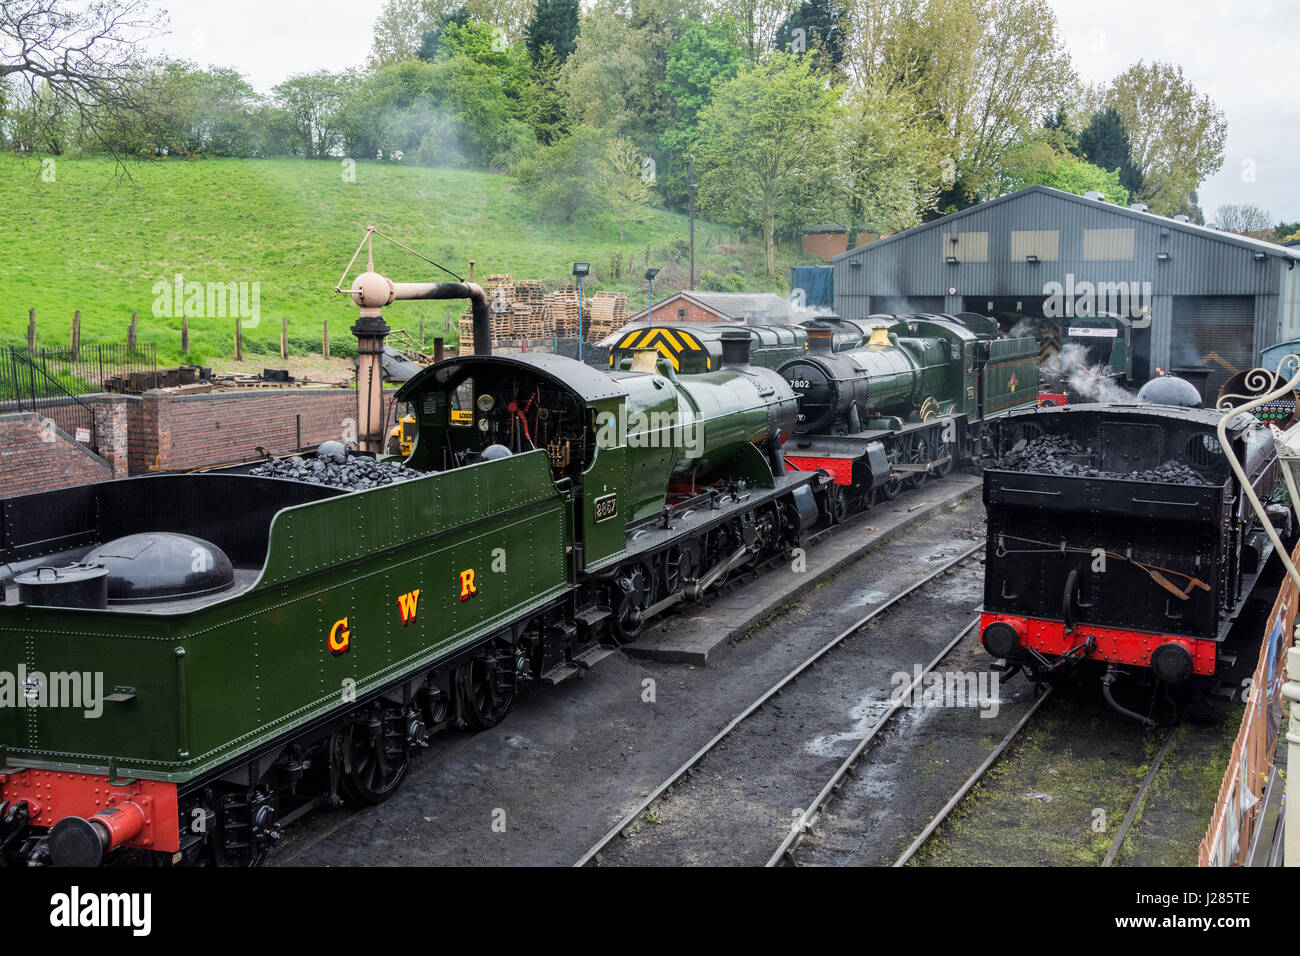 Steam trains at Bridgnorth Railway station, Shropshire, West Midlands, UK. Severn Valley Railway. Stock Photo